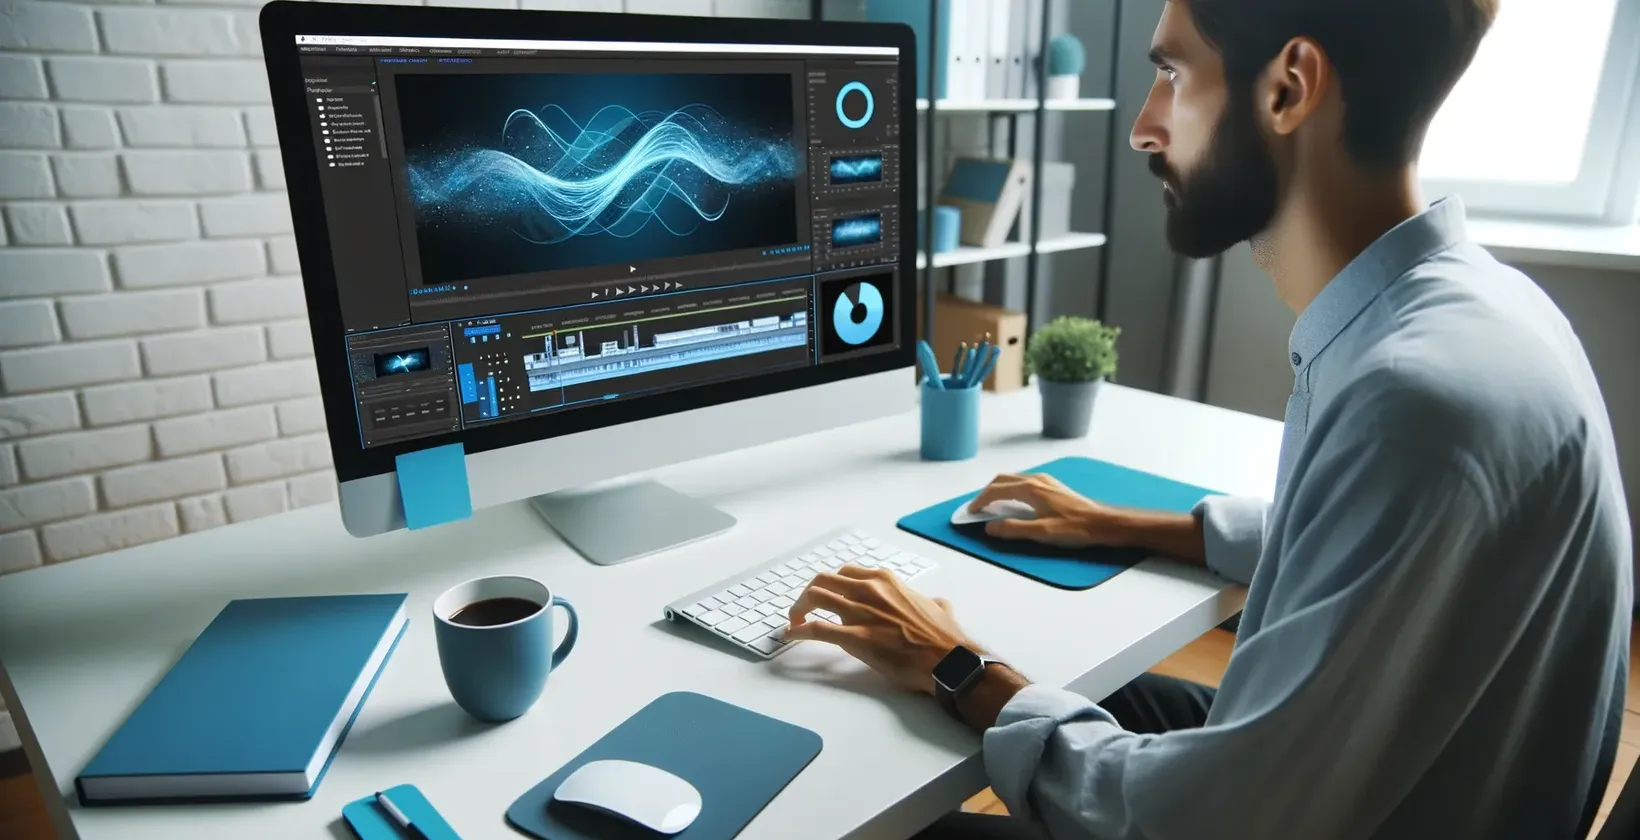 Мъж пише на компютър със син екран, използвайки субтитри iMovie